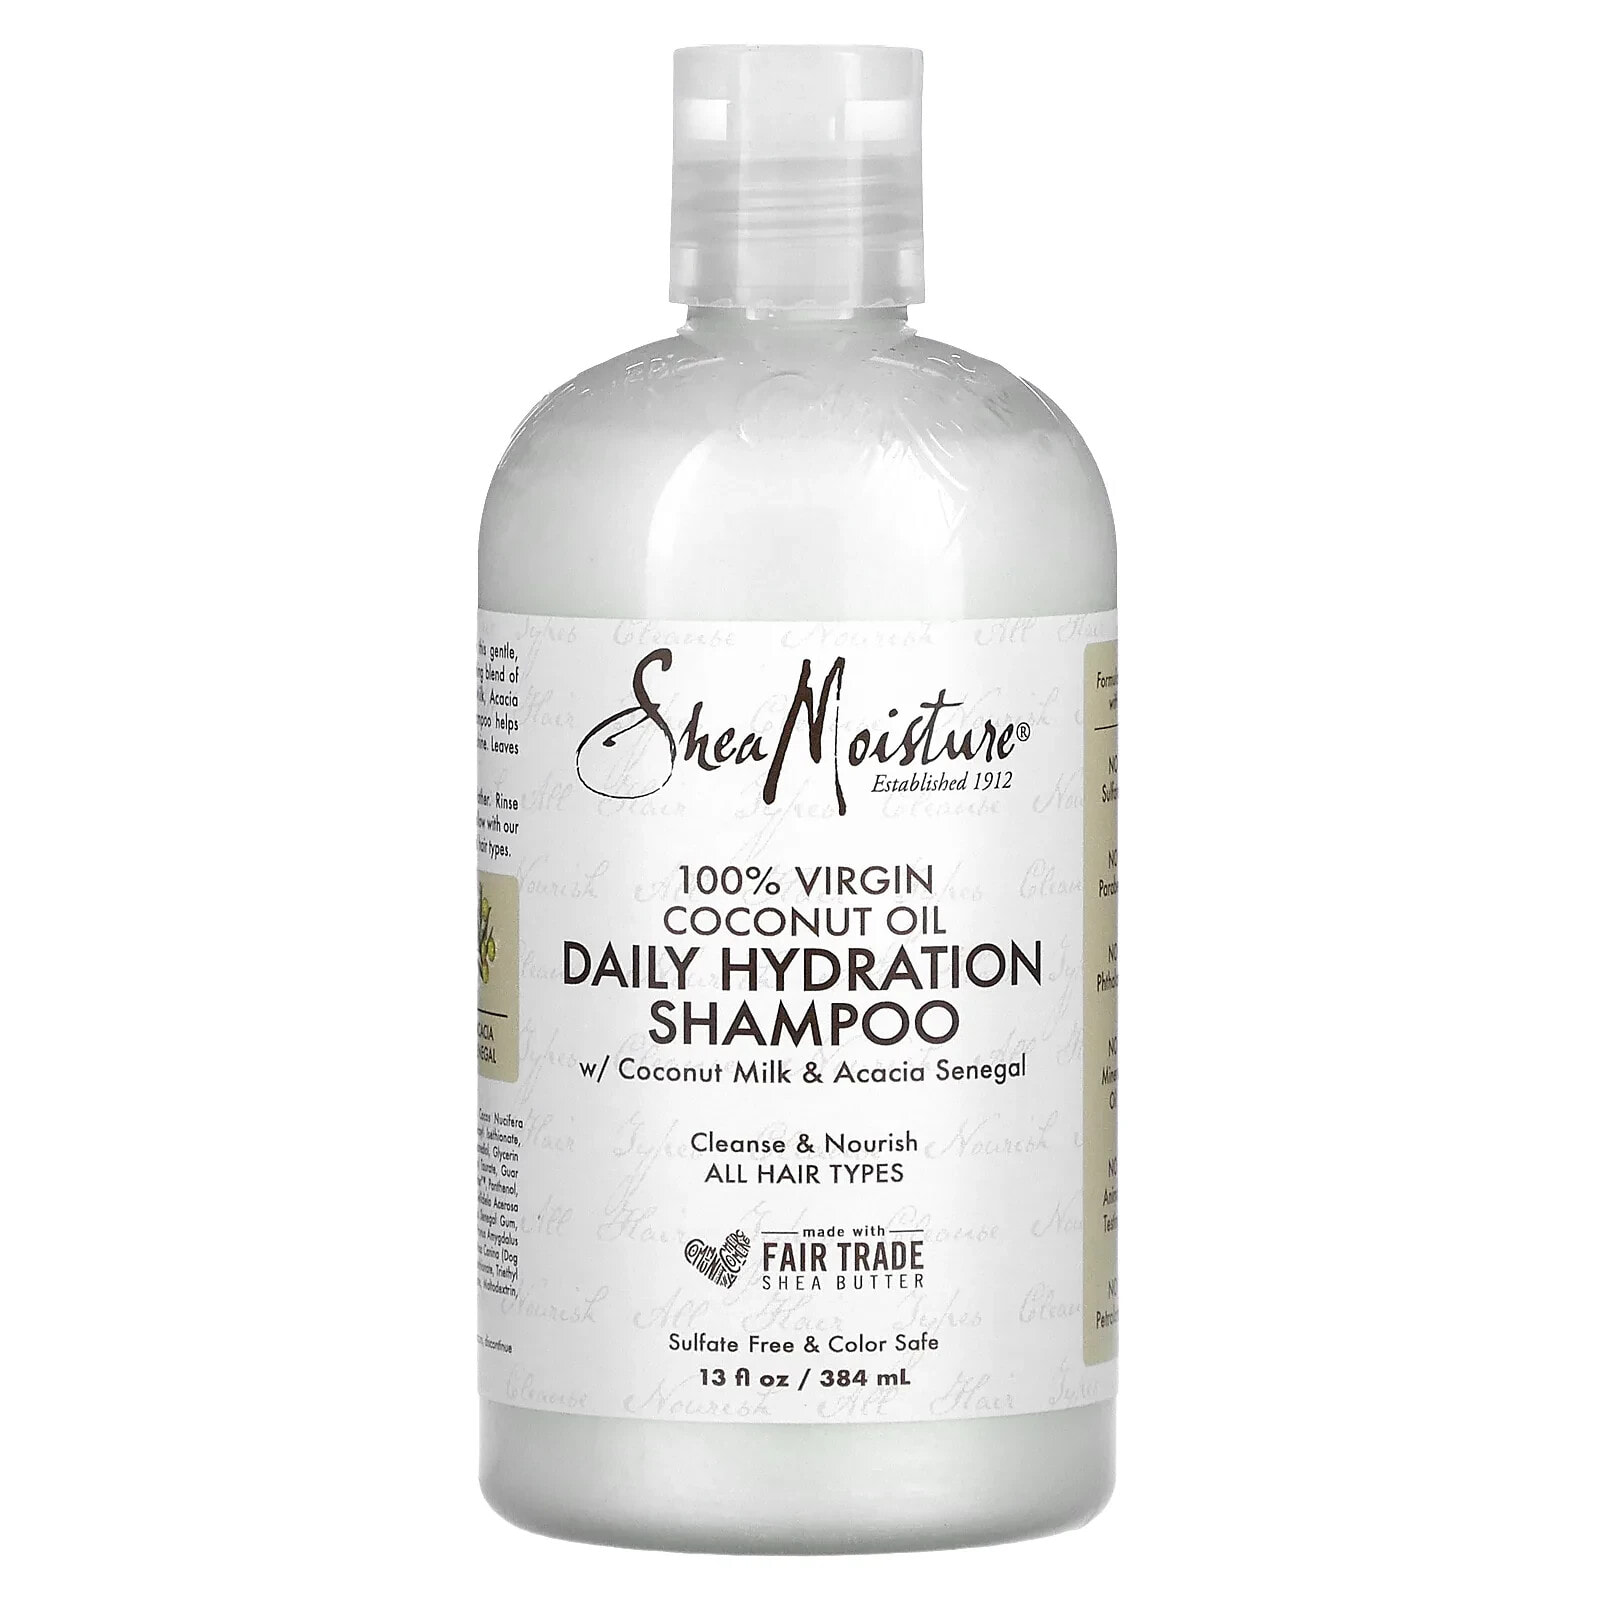 Daily Hydration Shampoo with Coconut Milk & Acacia Senegal, 13 fl oz (384 ml)